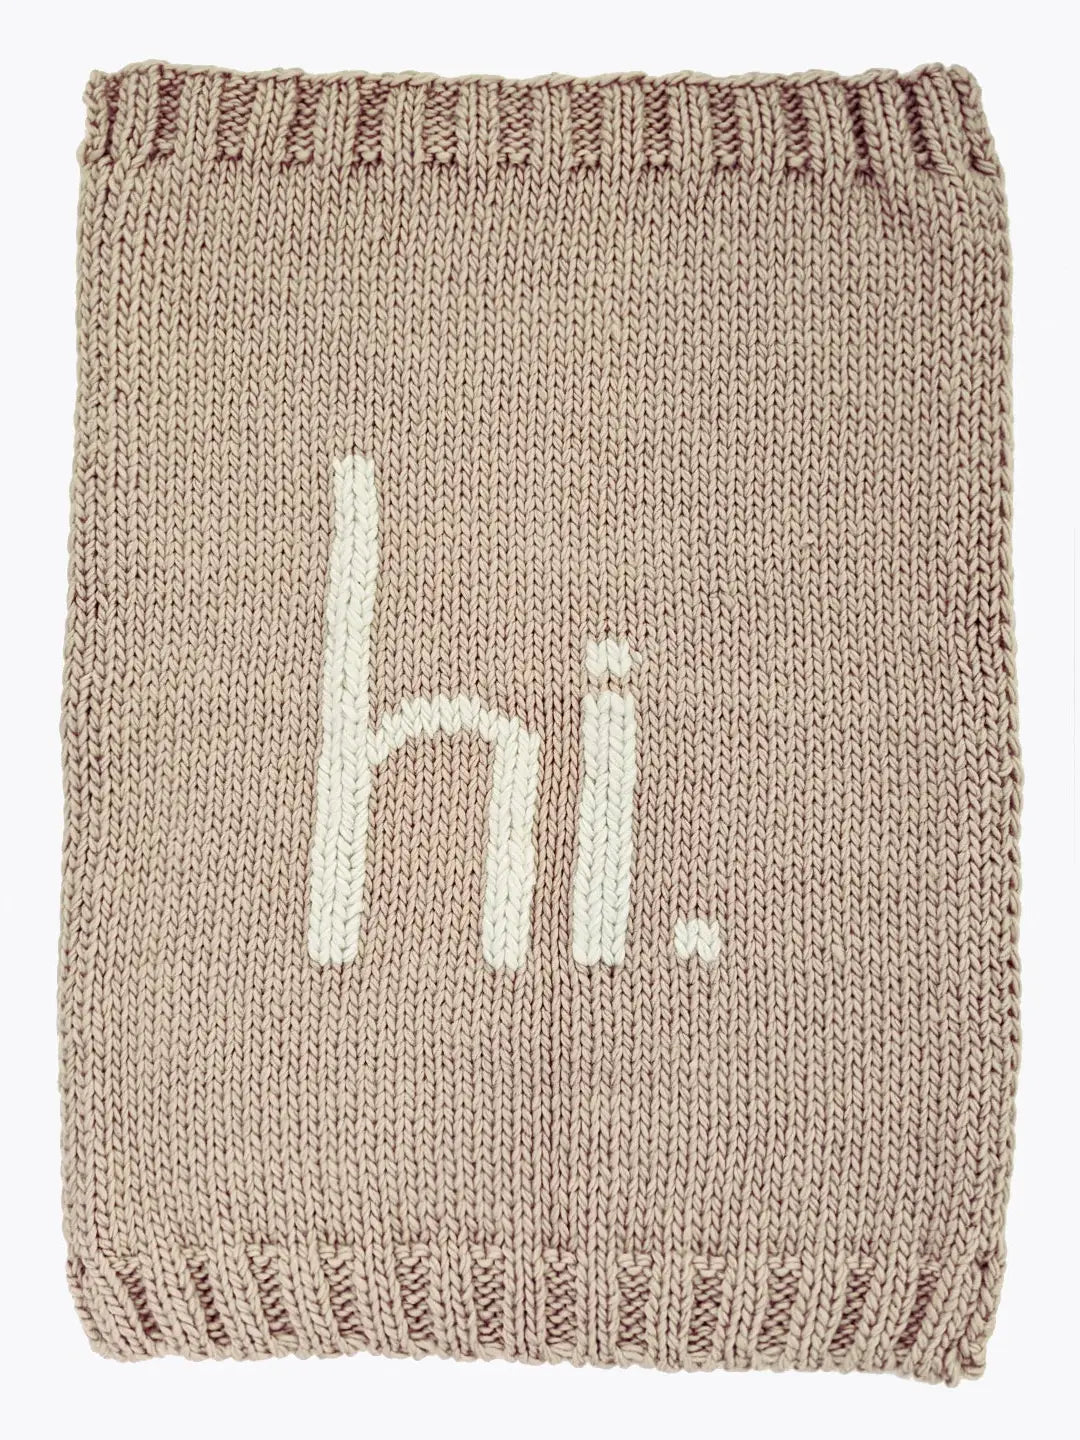 Hand Knit "Hi" Blanket